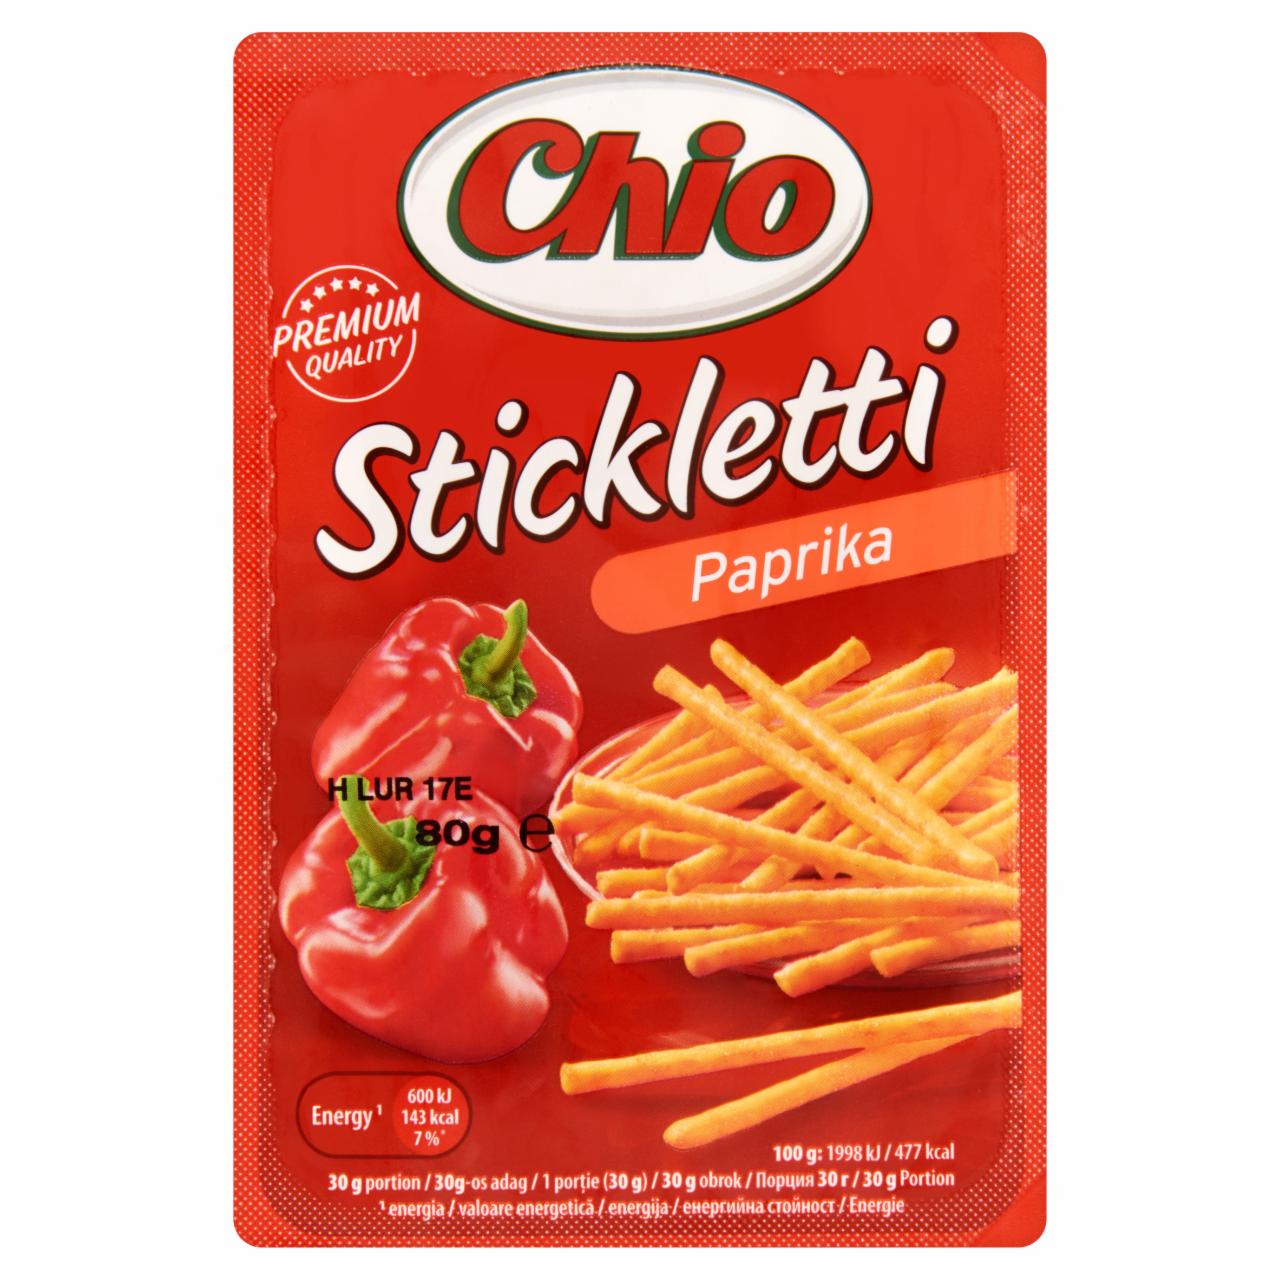 Képek - Chio Stickletti paprikás pálcika 80 g